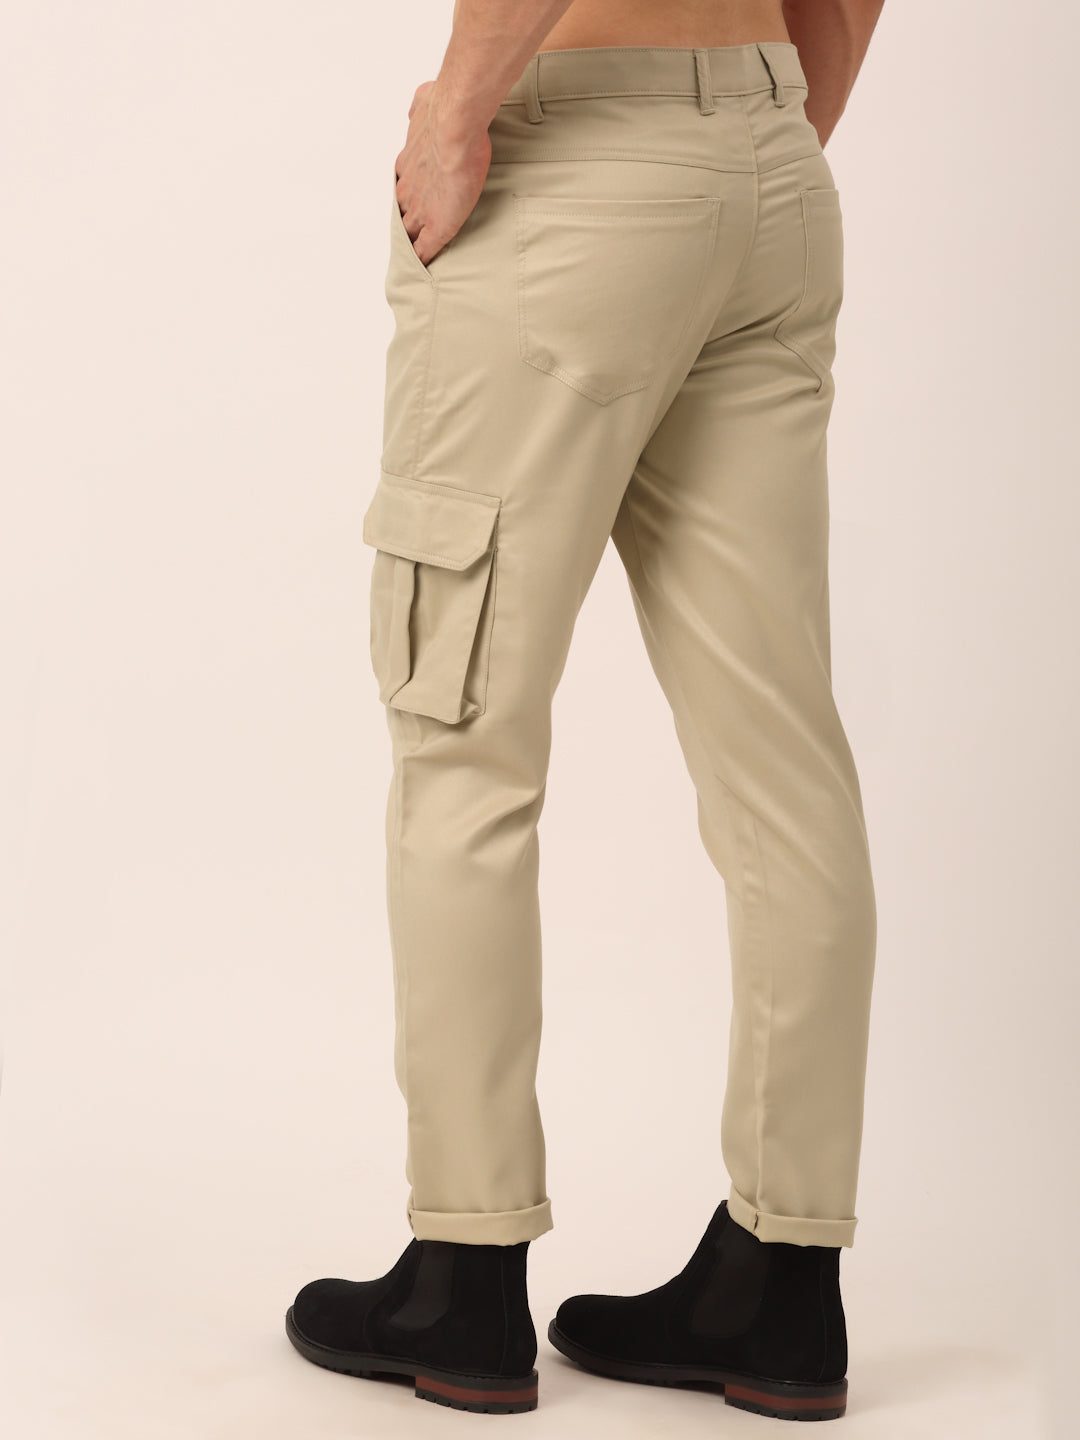 Men's Casual Cotton Solid Cargo Pants ( KGP 154 Cream ) - Jainish